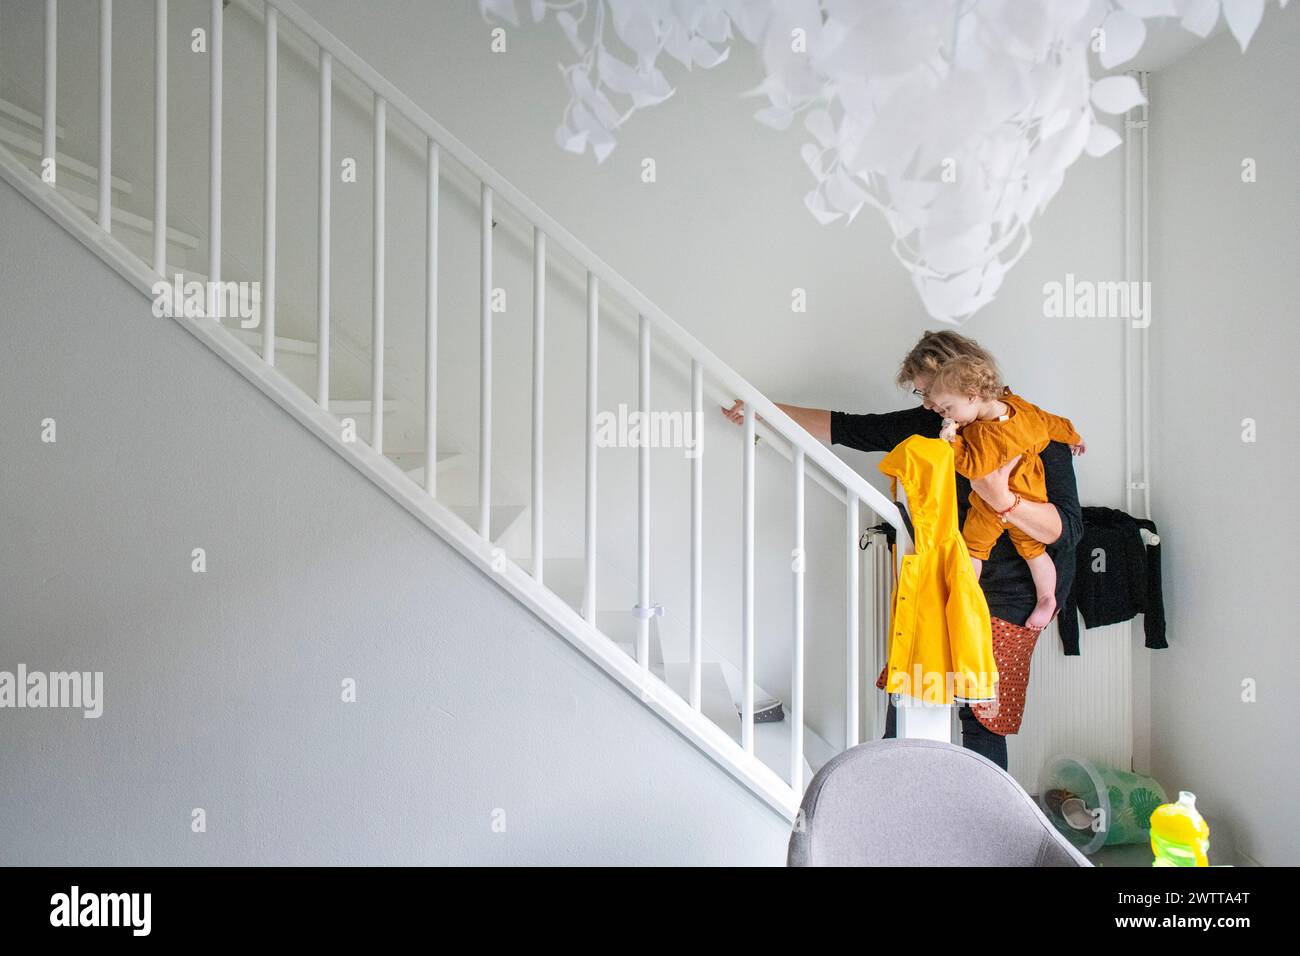 Ein Kind in gelbem Kleid, das die weiße Indoor-Treppe hinuntergeht und sich am Geländer hält, mit einer einzigartigen weißen Deckenbefestigung darüber. Stockfoto